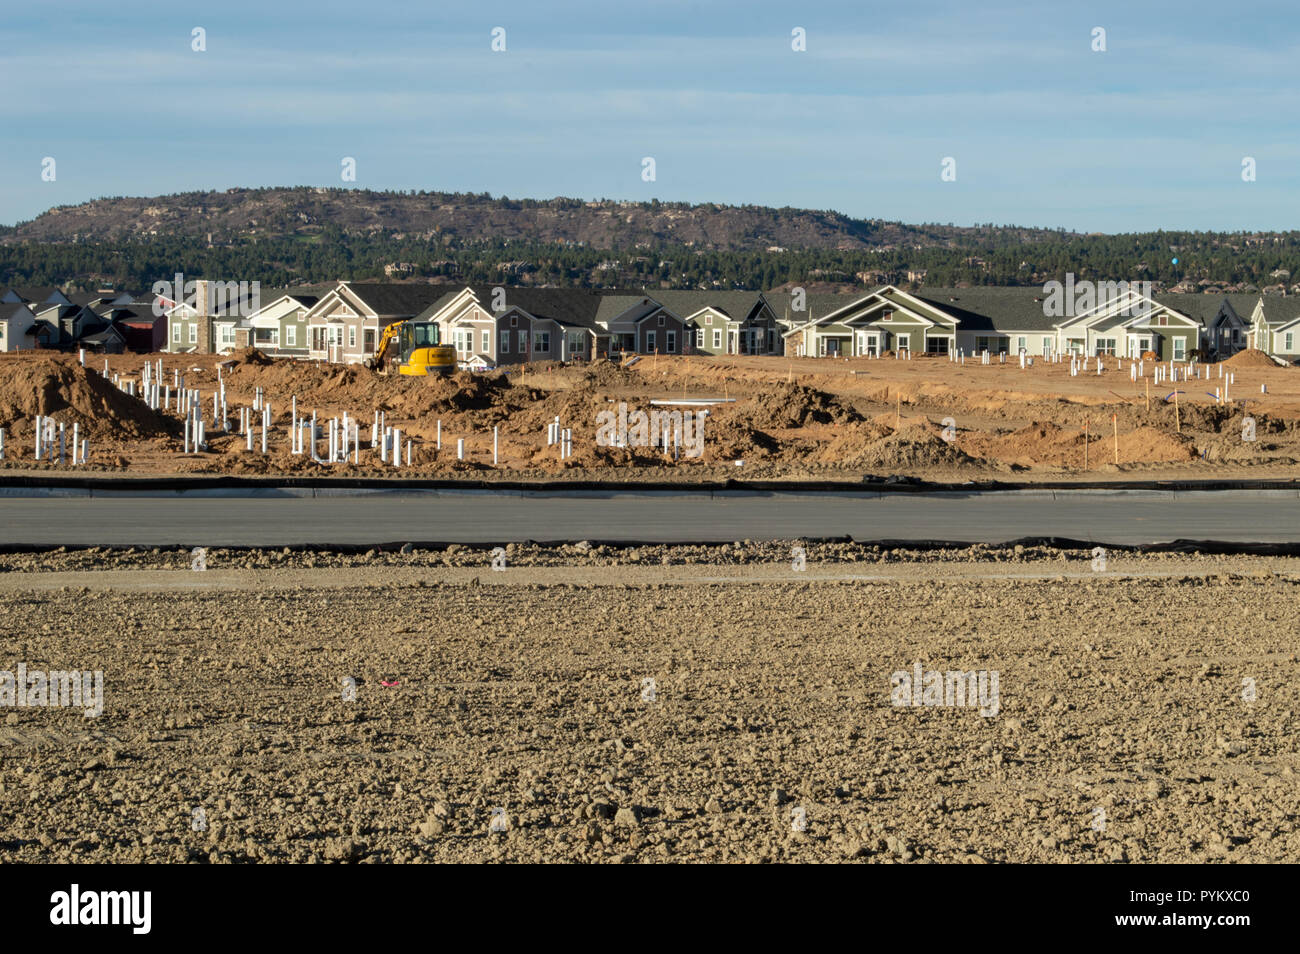 Castle Rock, Colorado / États-Unis - 28 octobre 2018 : la construction de logements avec des tuyaux site aménagé Banque D'Images